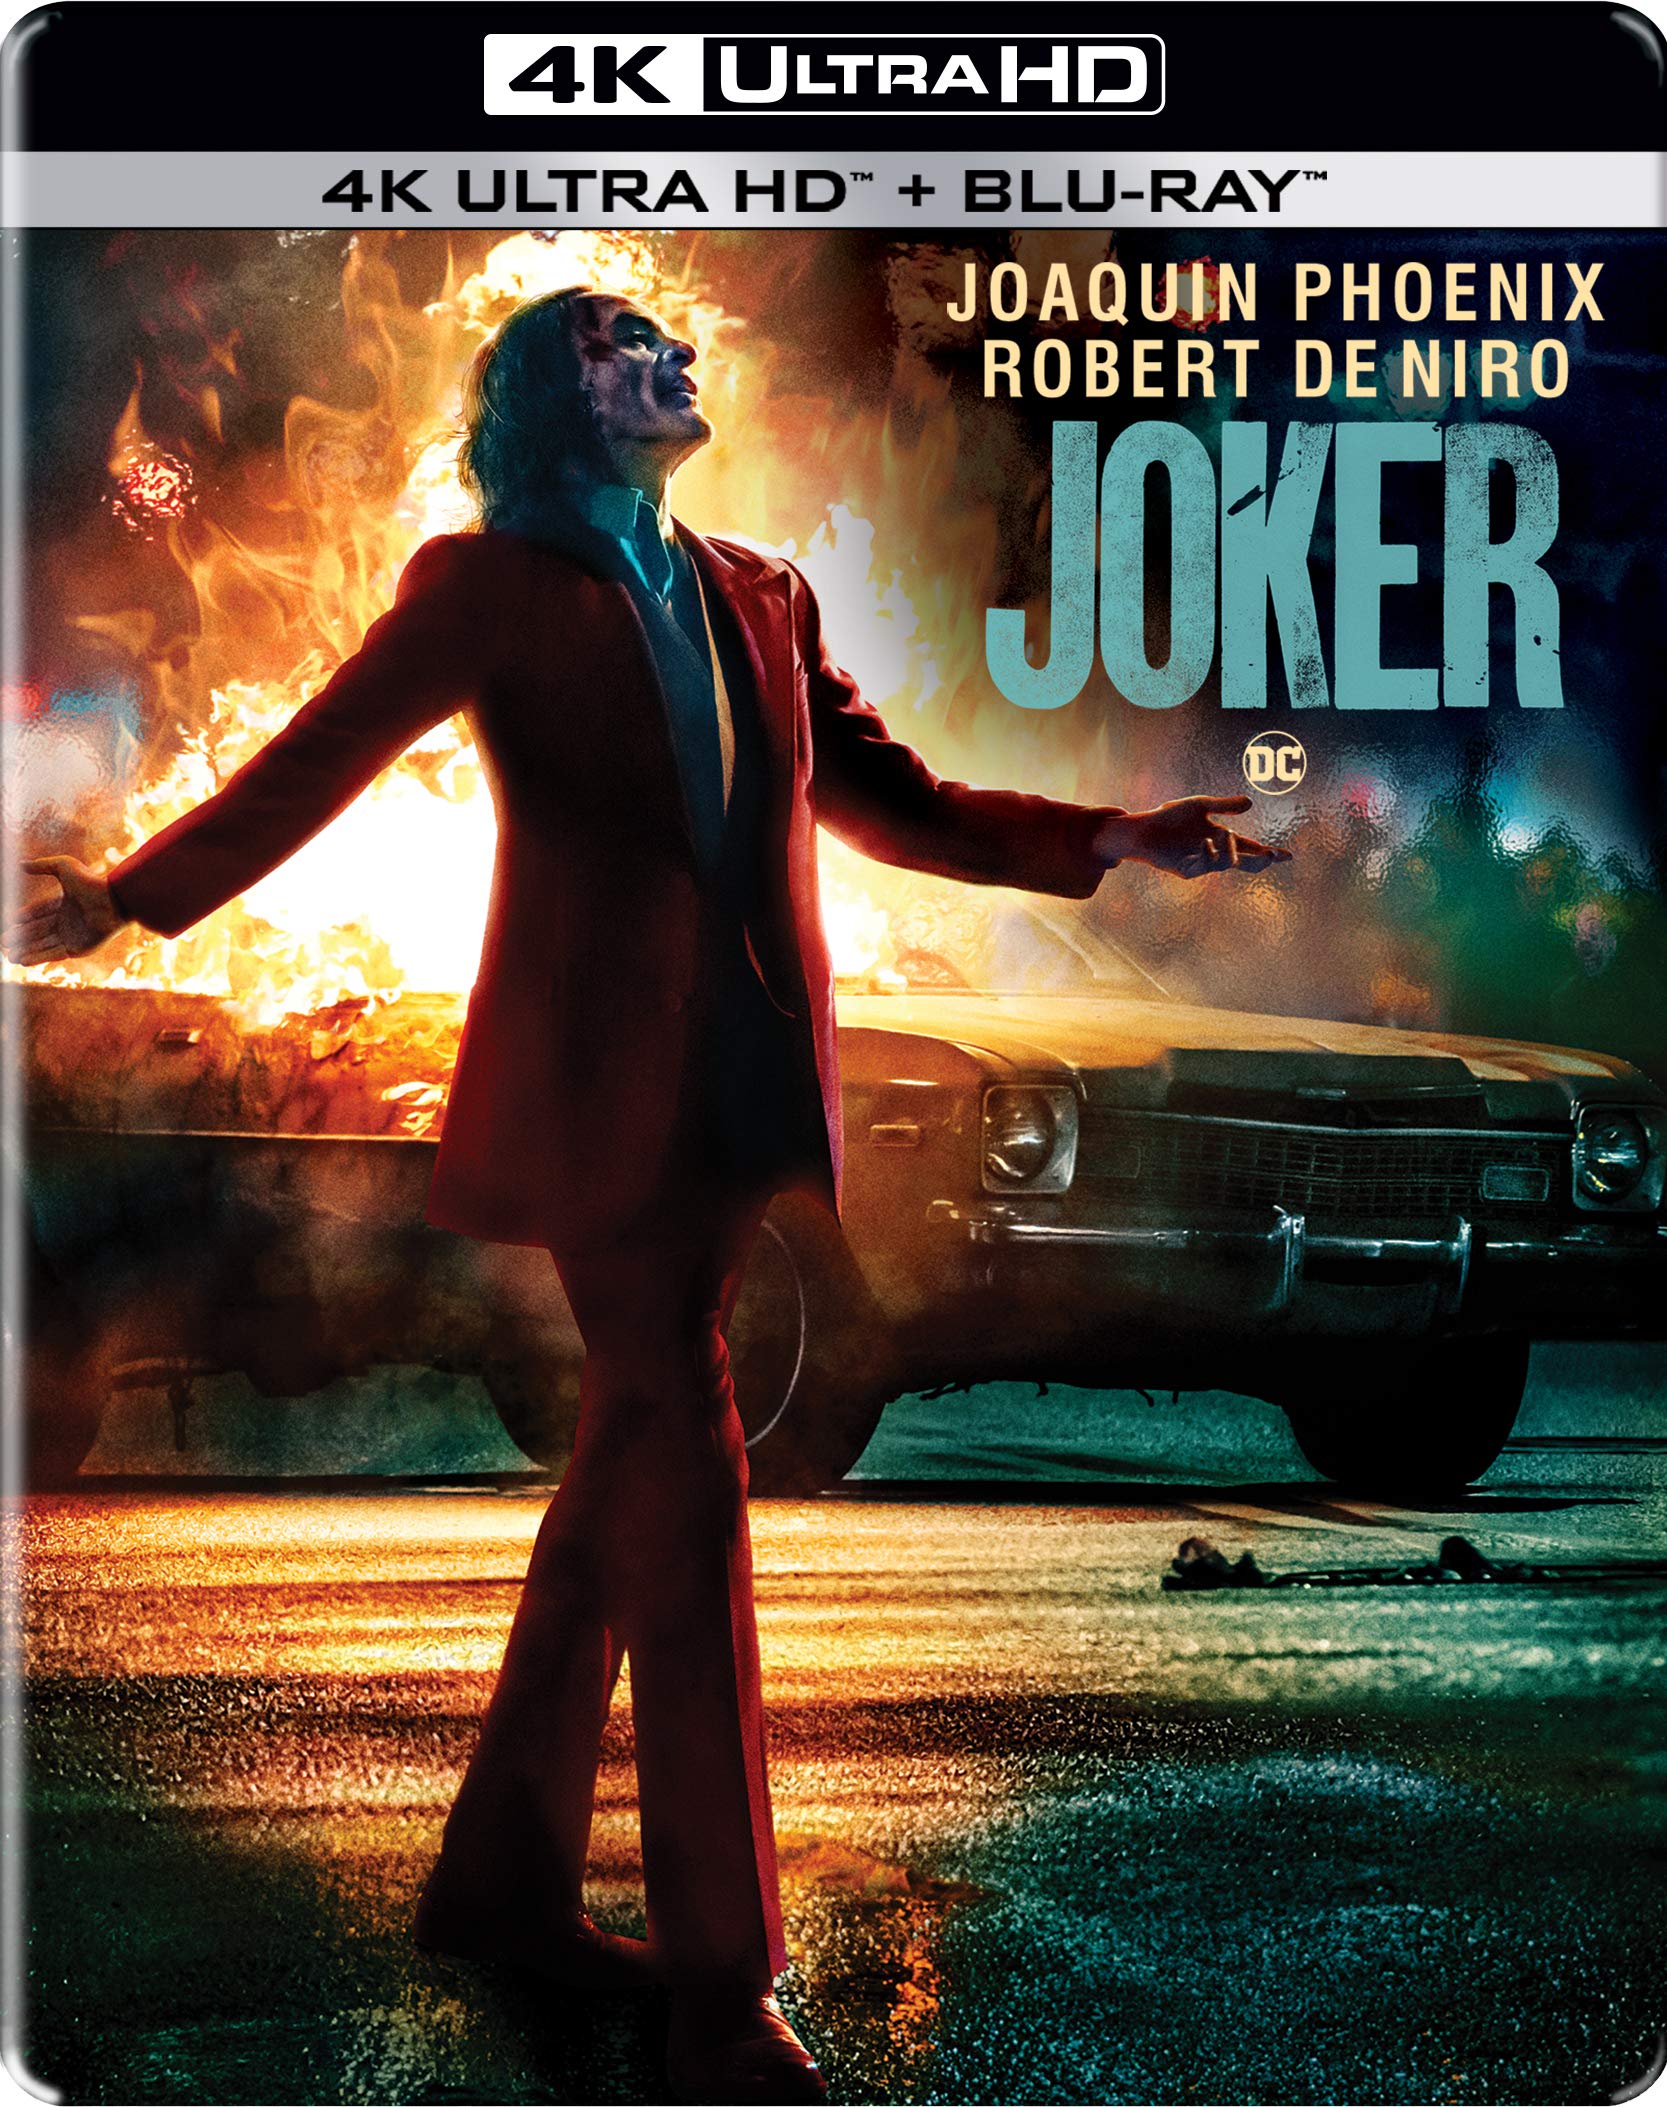 joker-2019-steelbook-4k-uhd-hd-2-disc-movie-purchase-or-watc